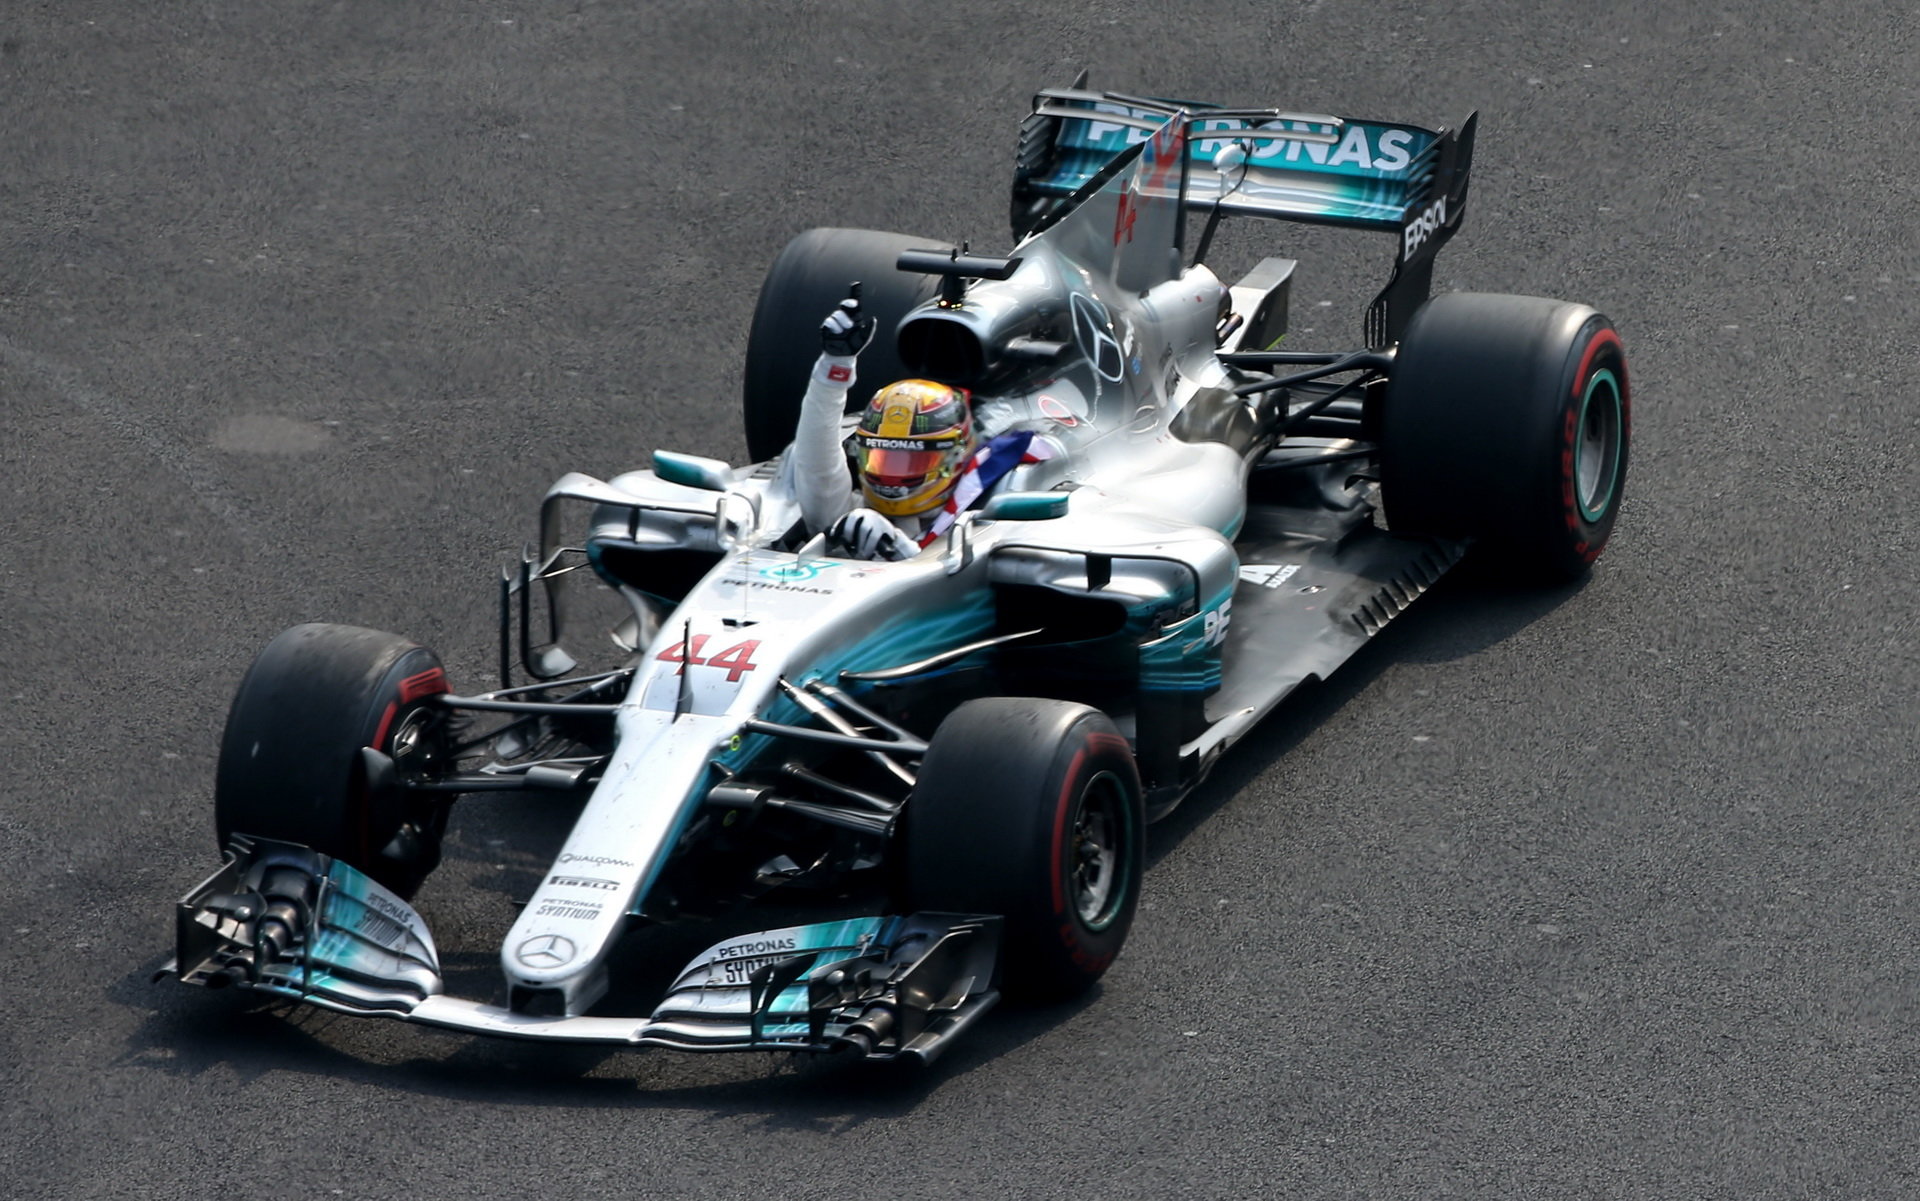 Lewis Hamilton slaví svůj 4 titul mistra světa v Mexiku